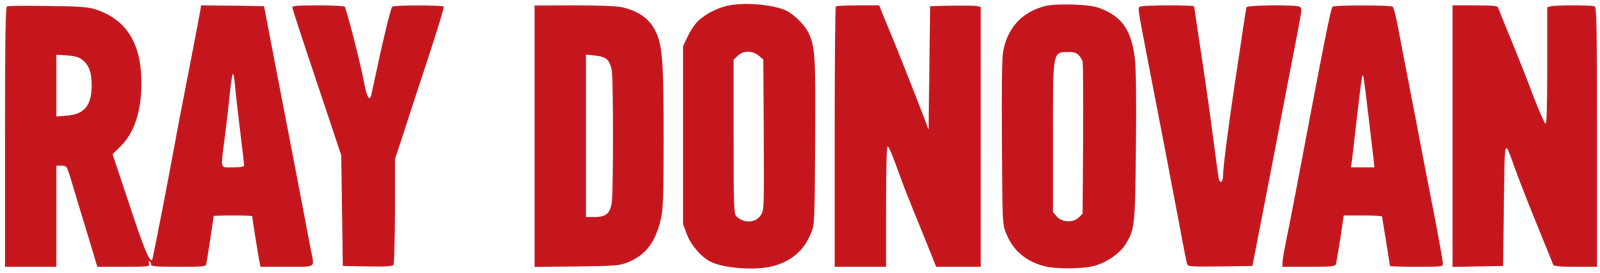 Ray Donovan logo.